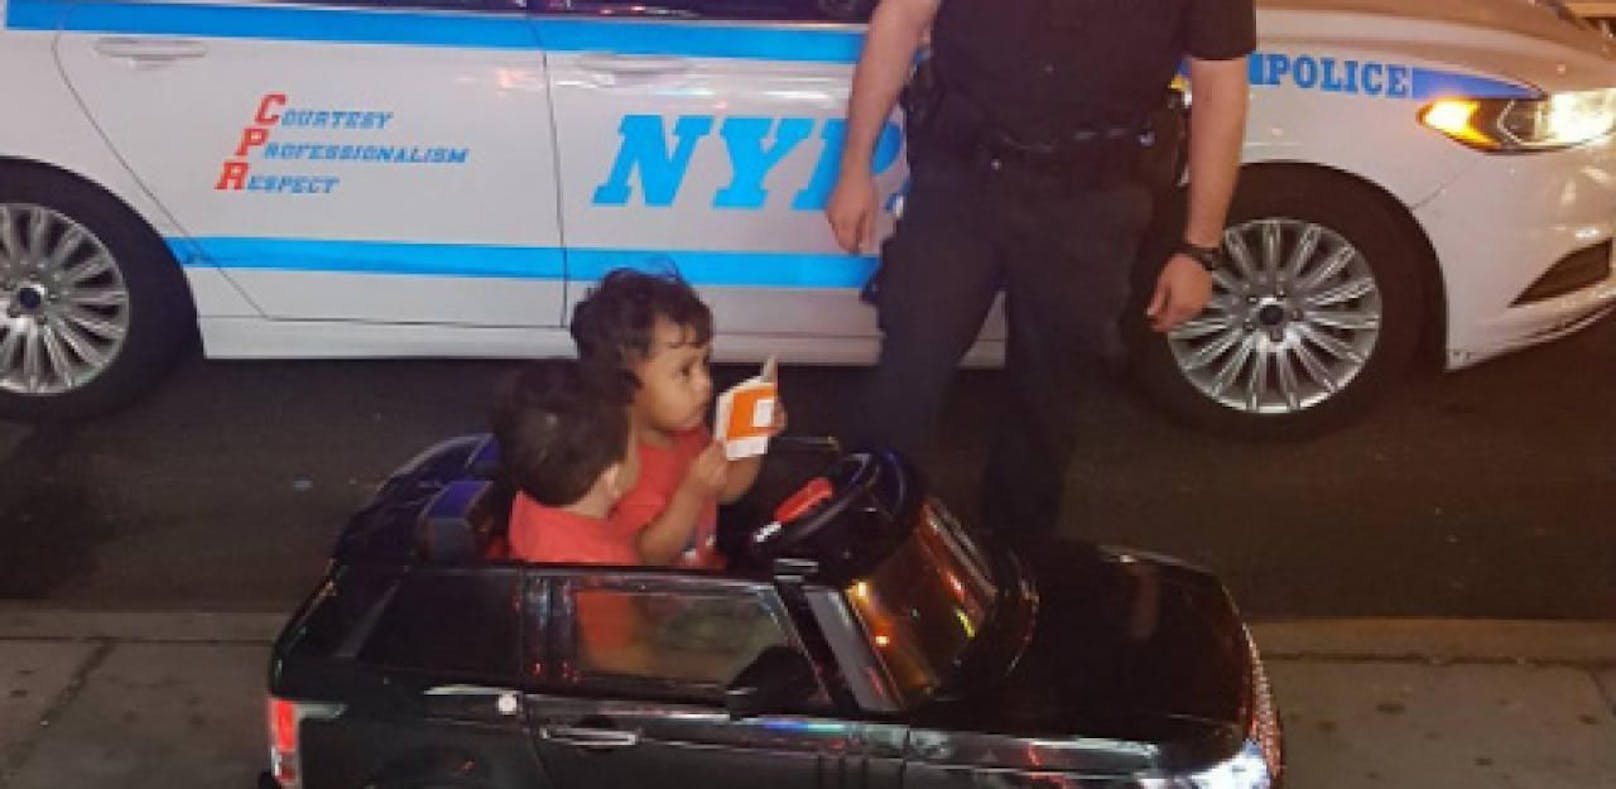 Cops kontrollieren süße Zwillinge im Spielzeugauto